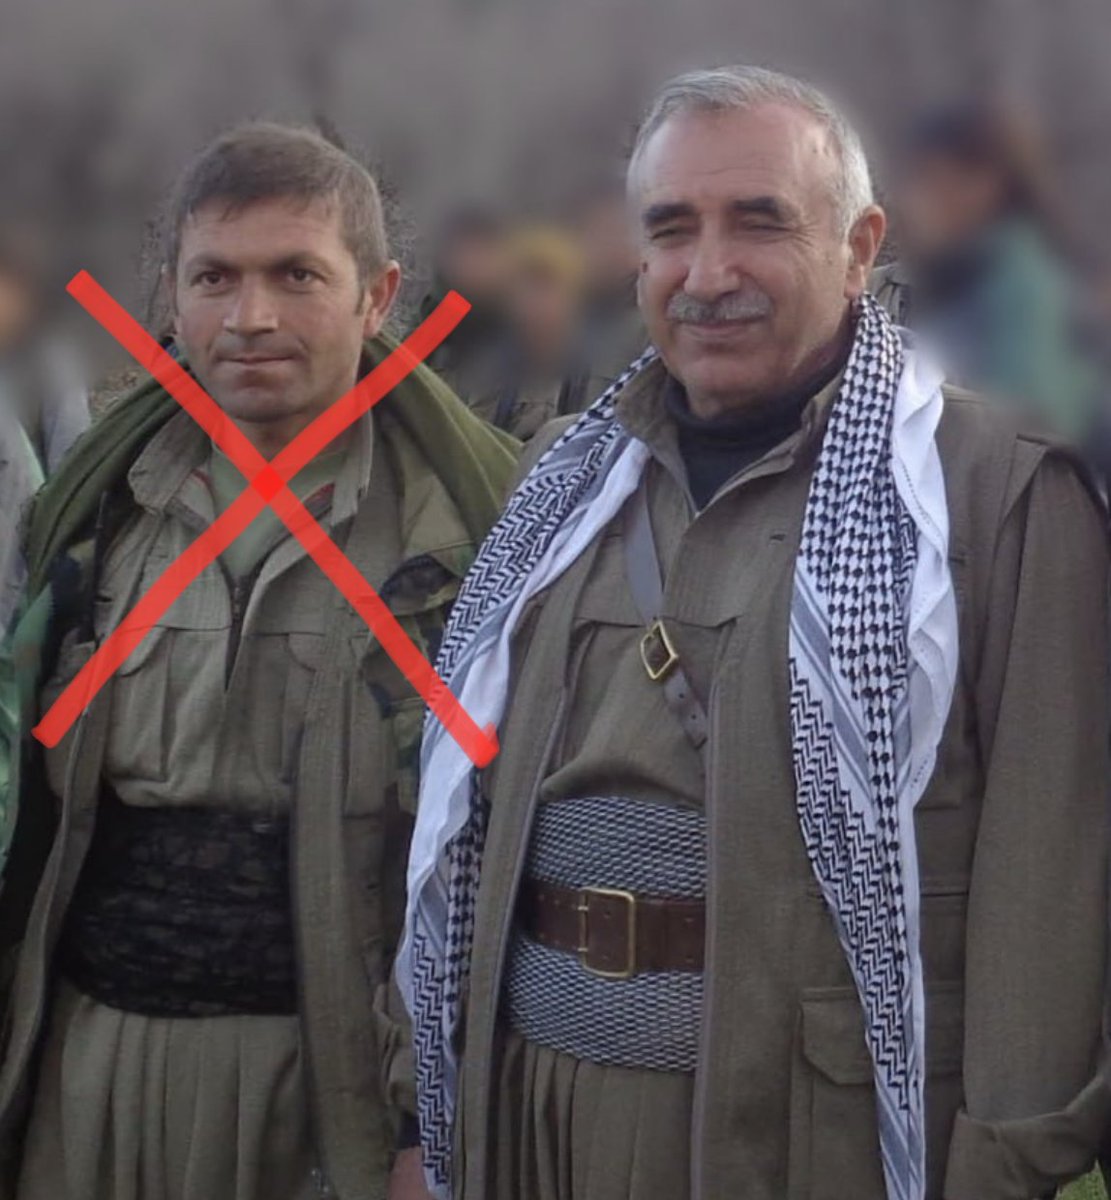 PKK/KCK-HPG sözde konsey yöneticilerinden Şevger Çiya kod adlı Sedat Aksu, MİT’in Irak’ta gerçekleştirdiği operasyonla leş hale getirildi